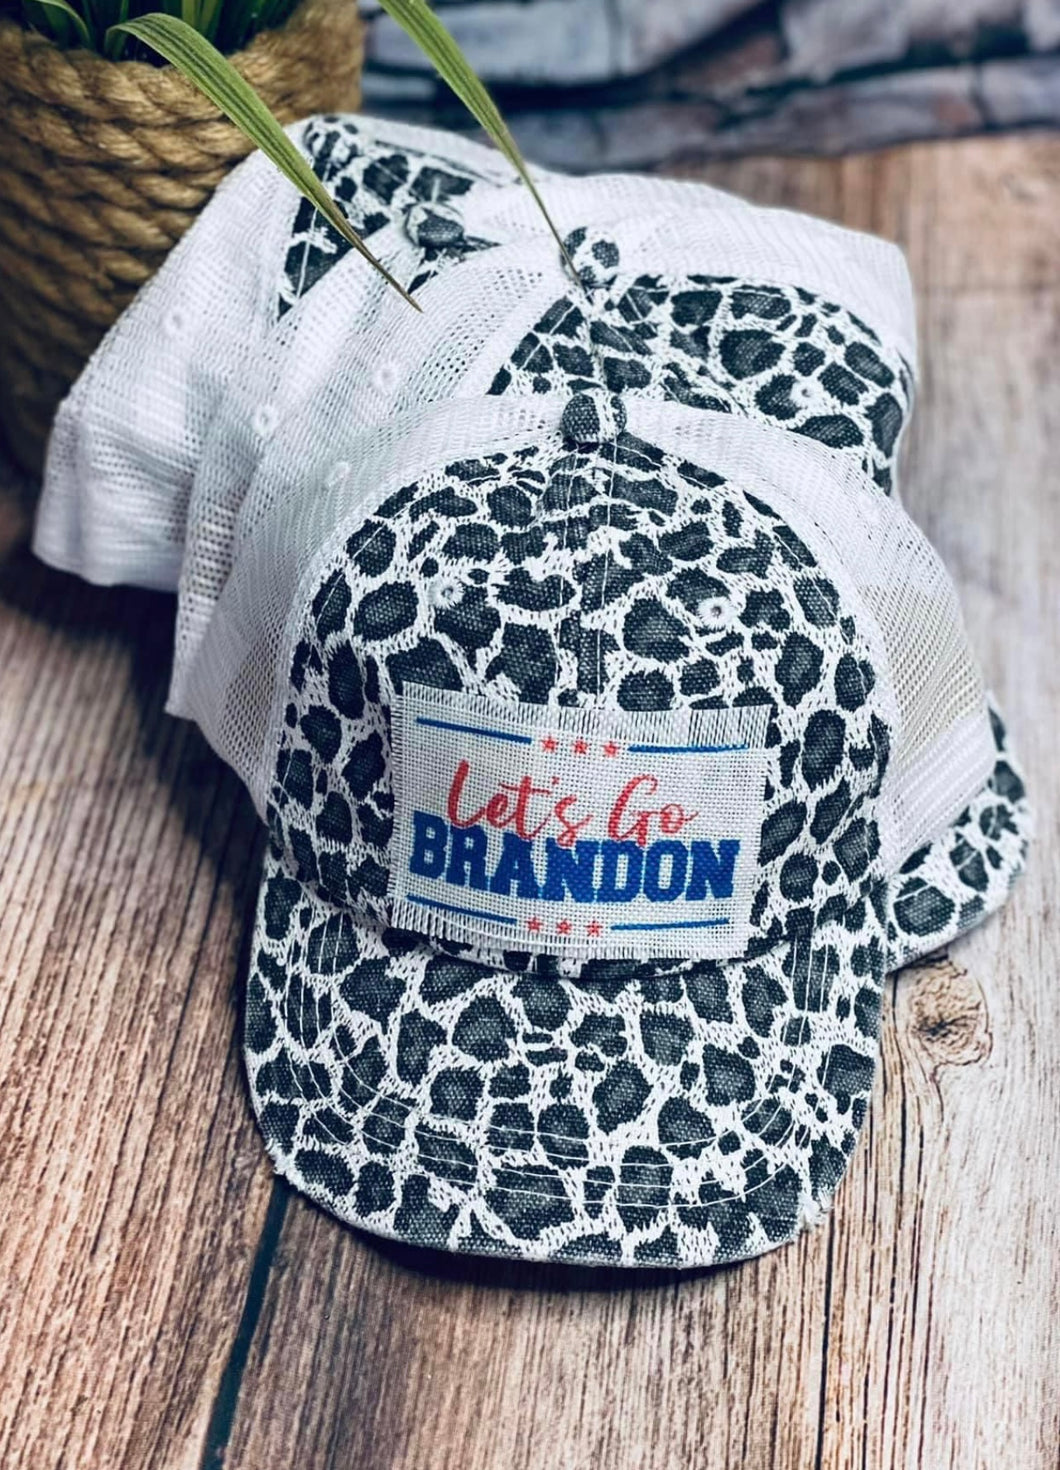 Let’s go Brandon cheetah patch hat